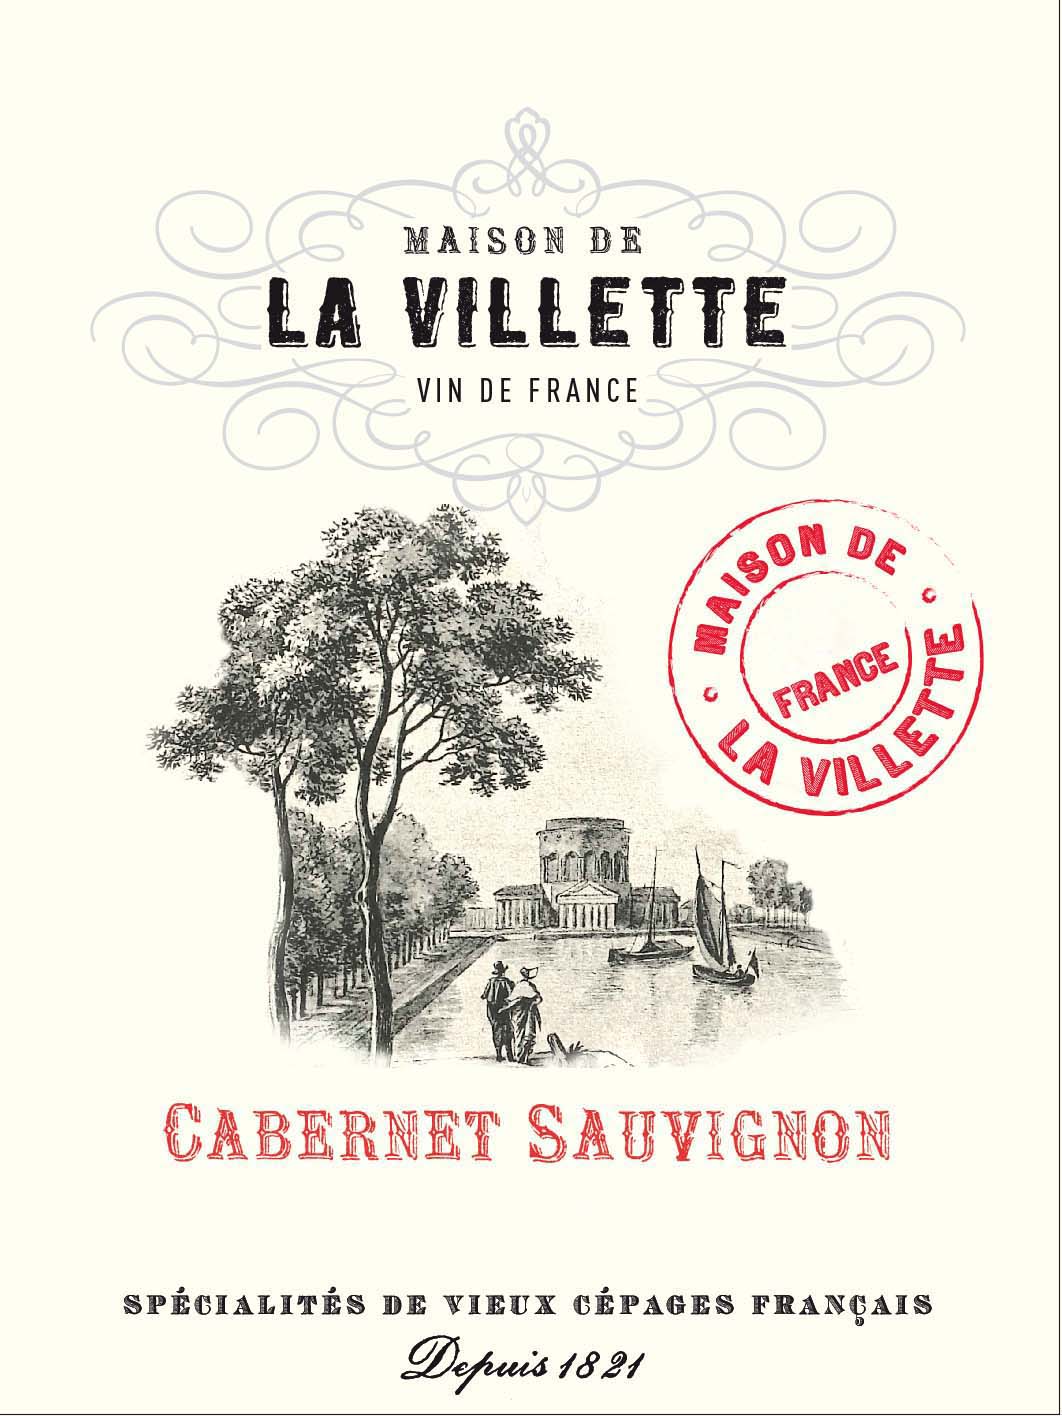 La Villette - Cabernet Sauvignon label